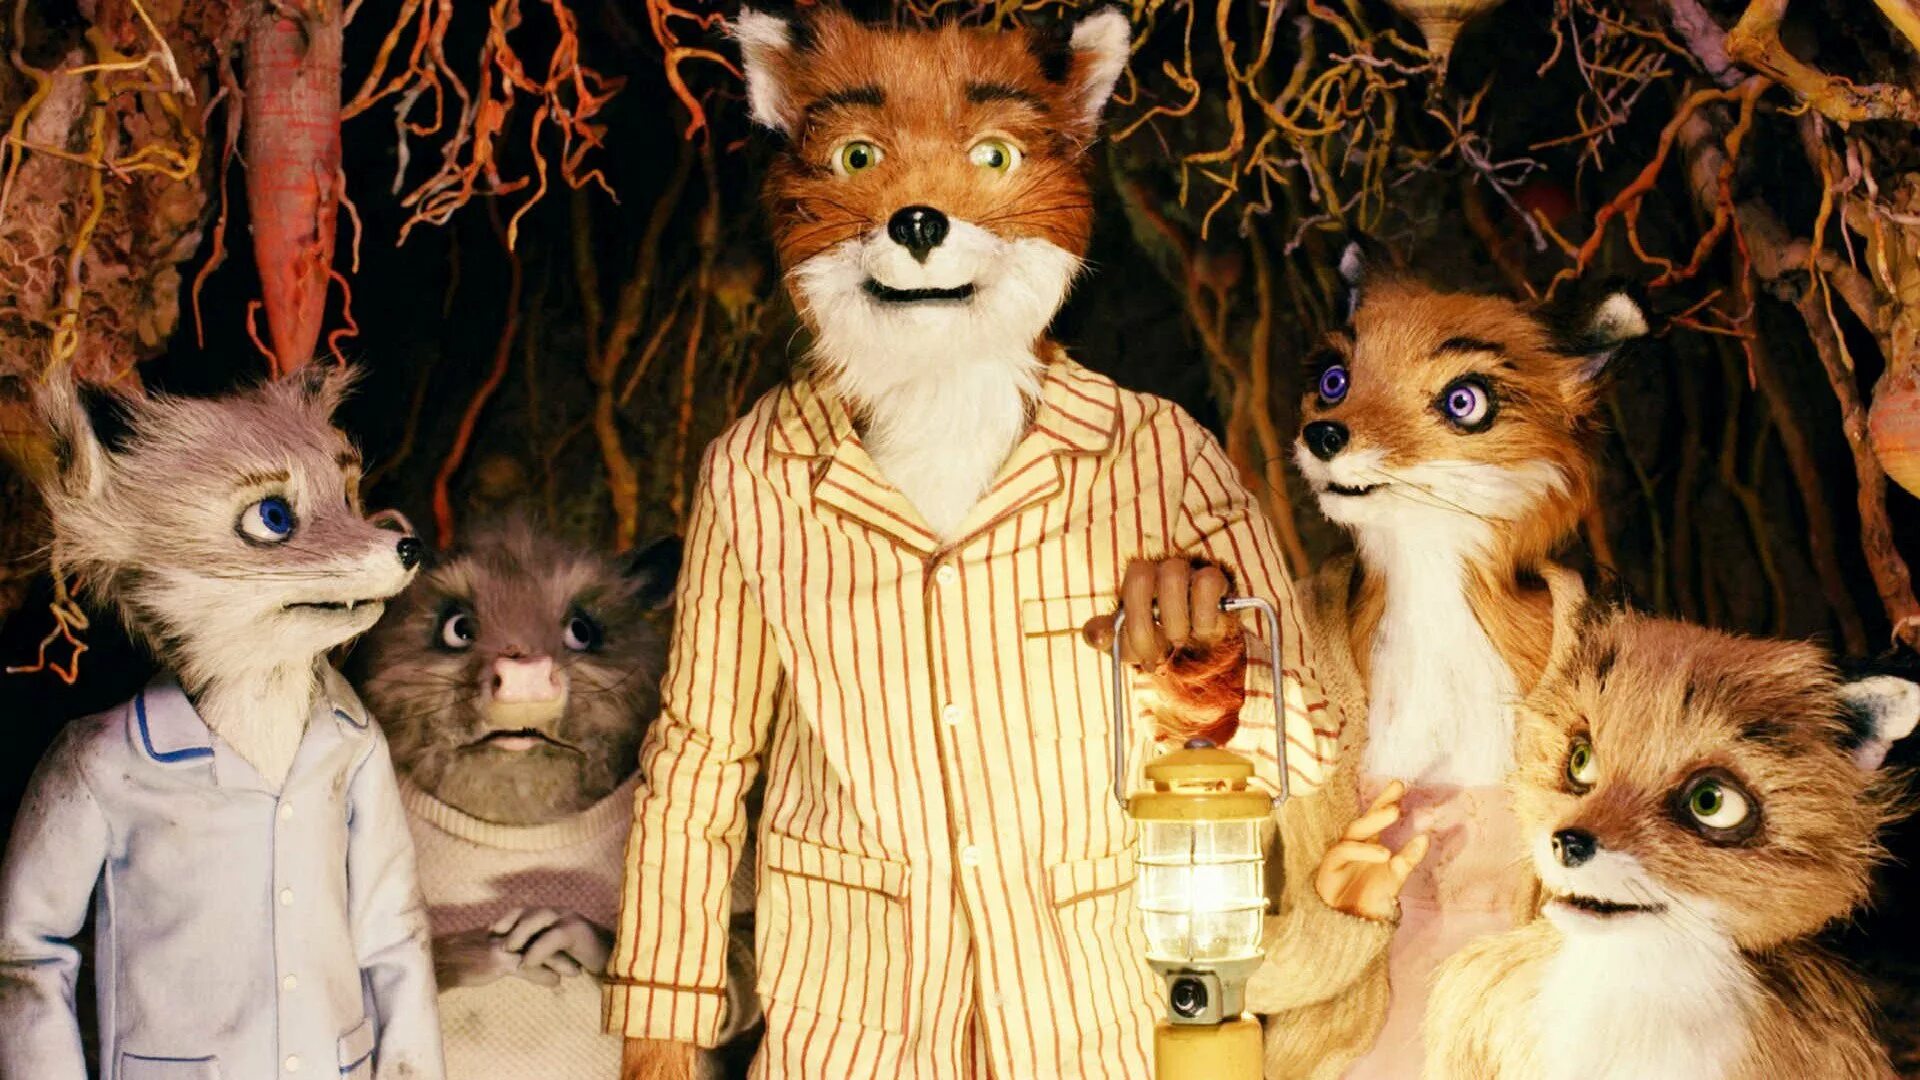 Бесподобный Мистер Фокс 2009. Бесподобный Мистер ФОК. Бесподобный Мистер Фокс 2. Бесподобный Мистер Фокс (fantastic Mr. Fox), 2009. Mister fox